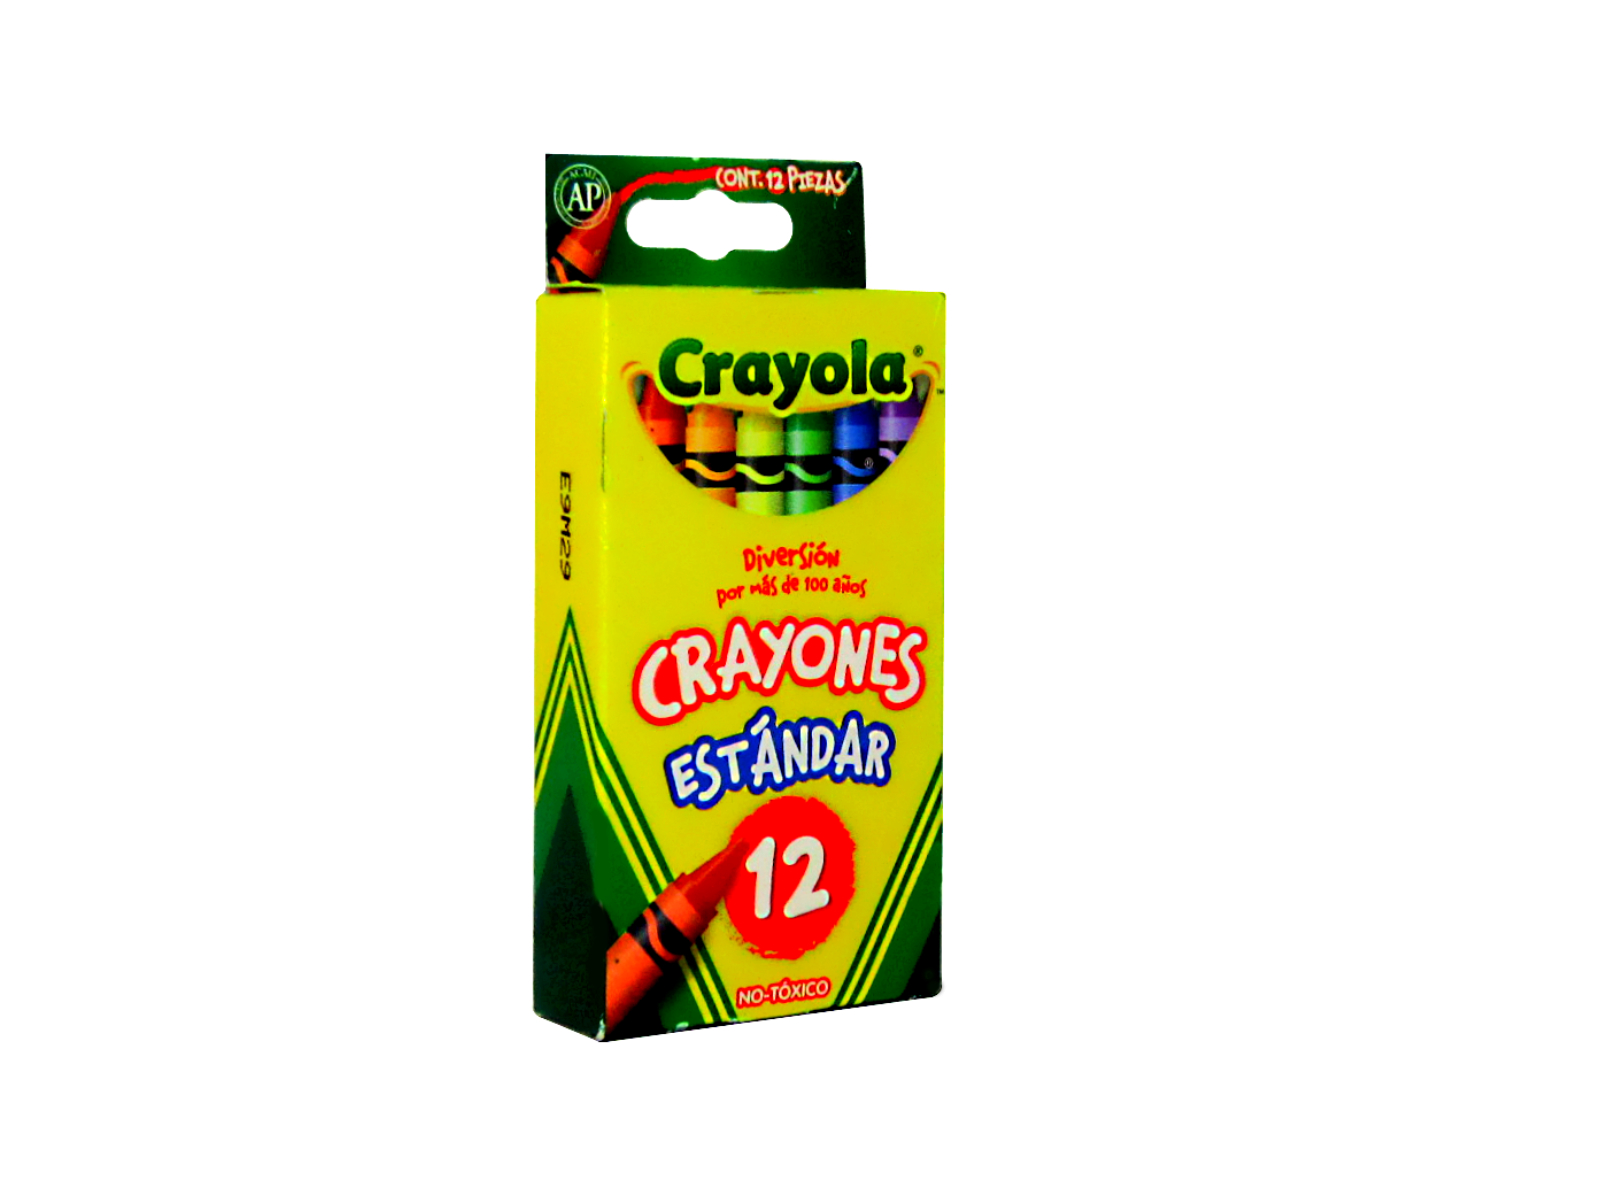 CRAYONES ESTANDARD C/12 CRAYOLA                             